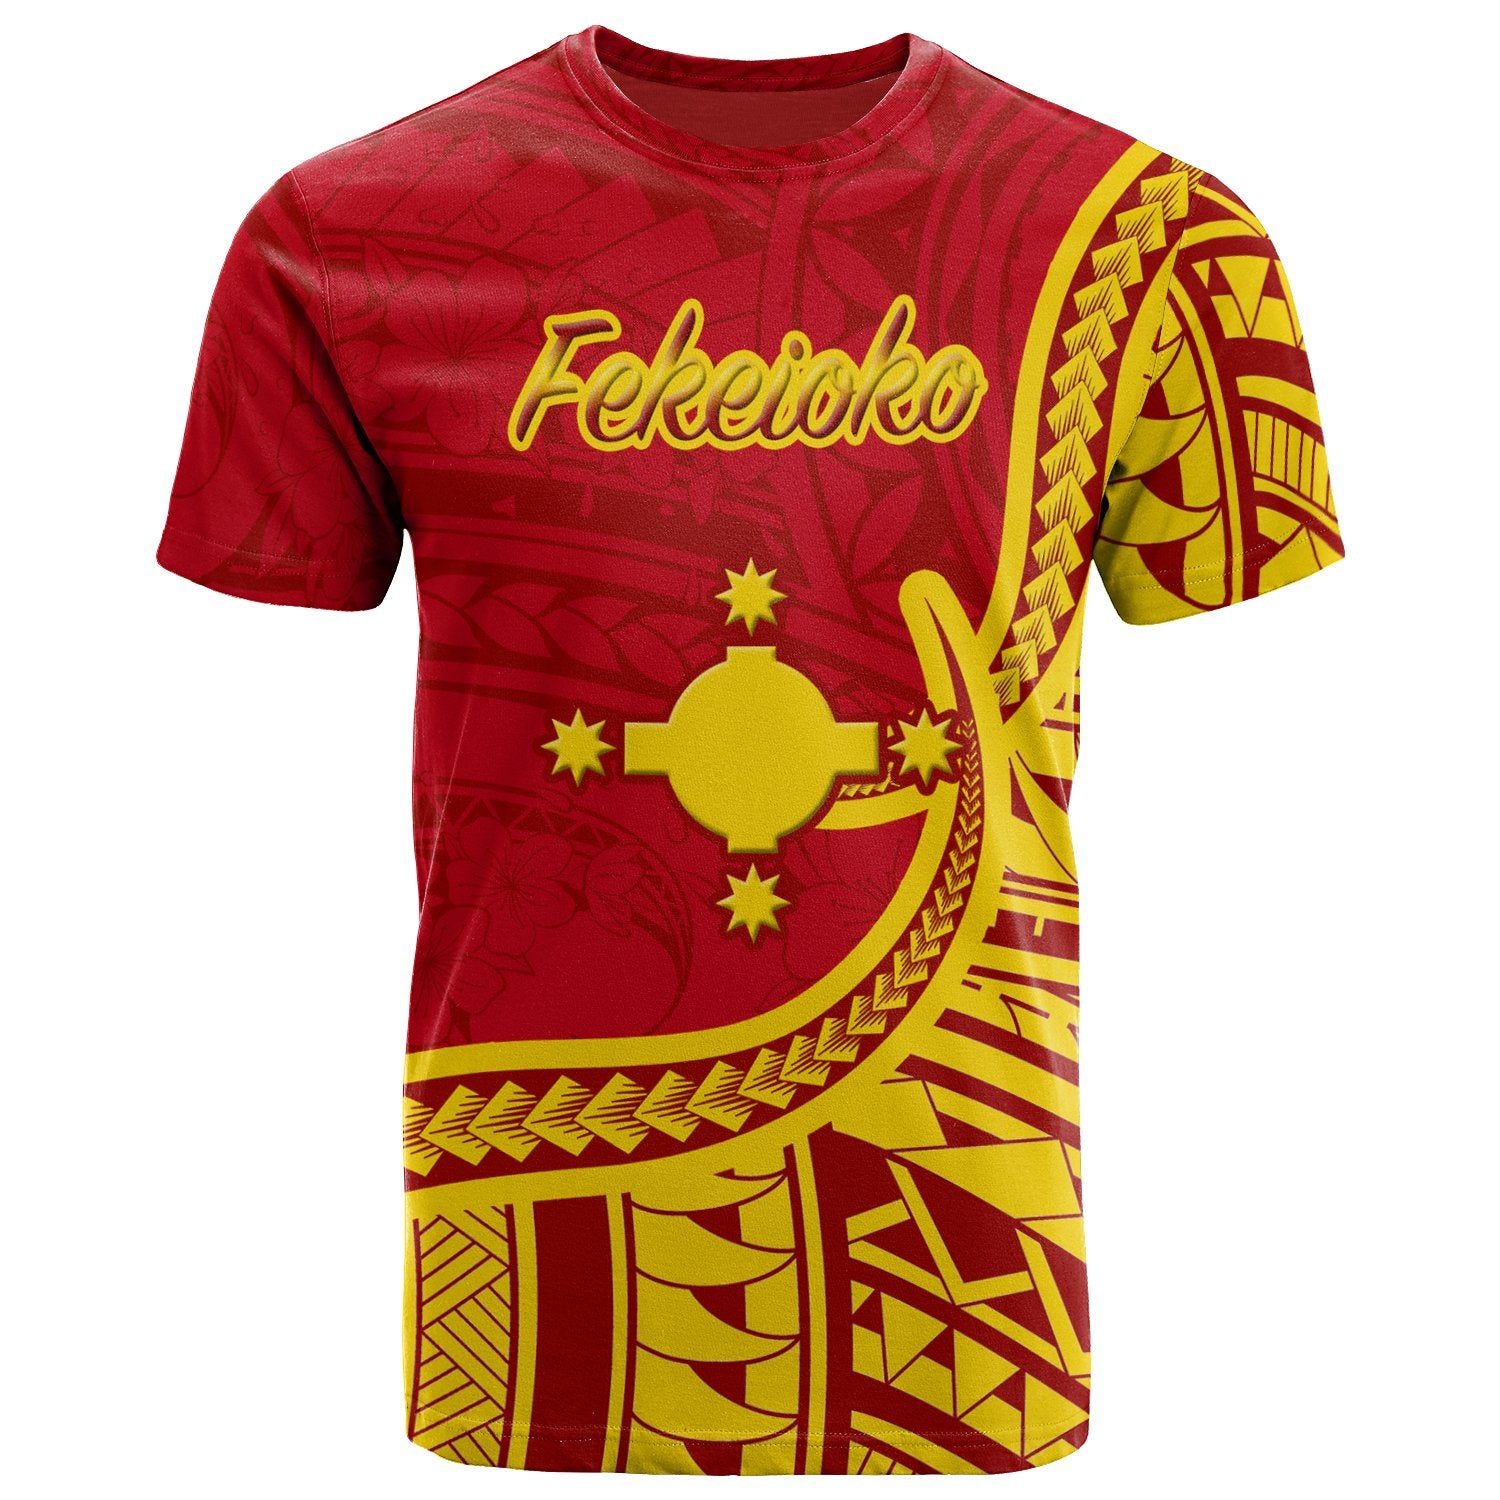 Rotuma T Shirt Fekeioko Flag Rotuma Unisex Red - Polynesian Pride